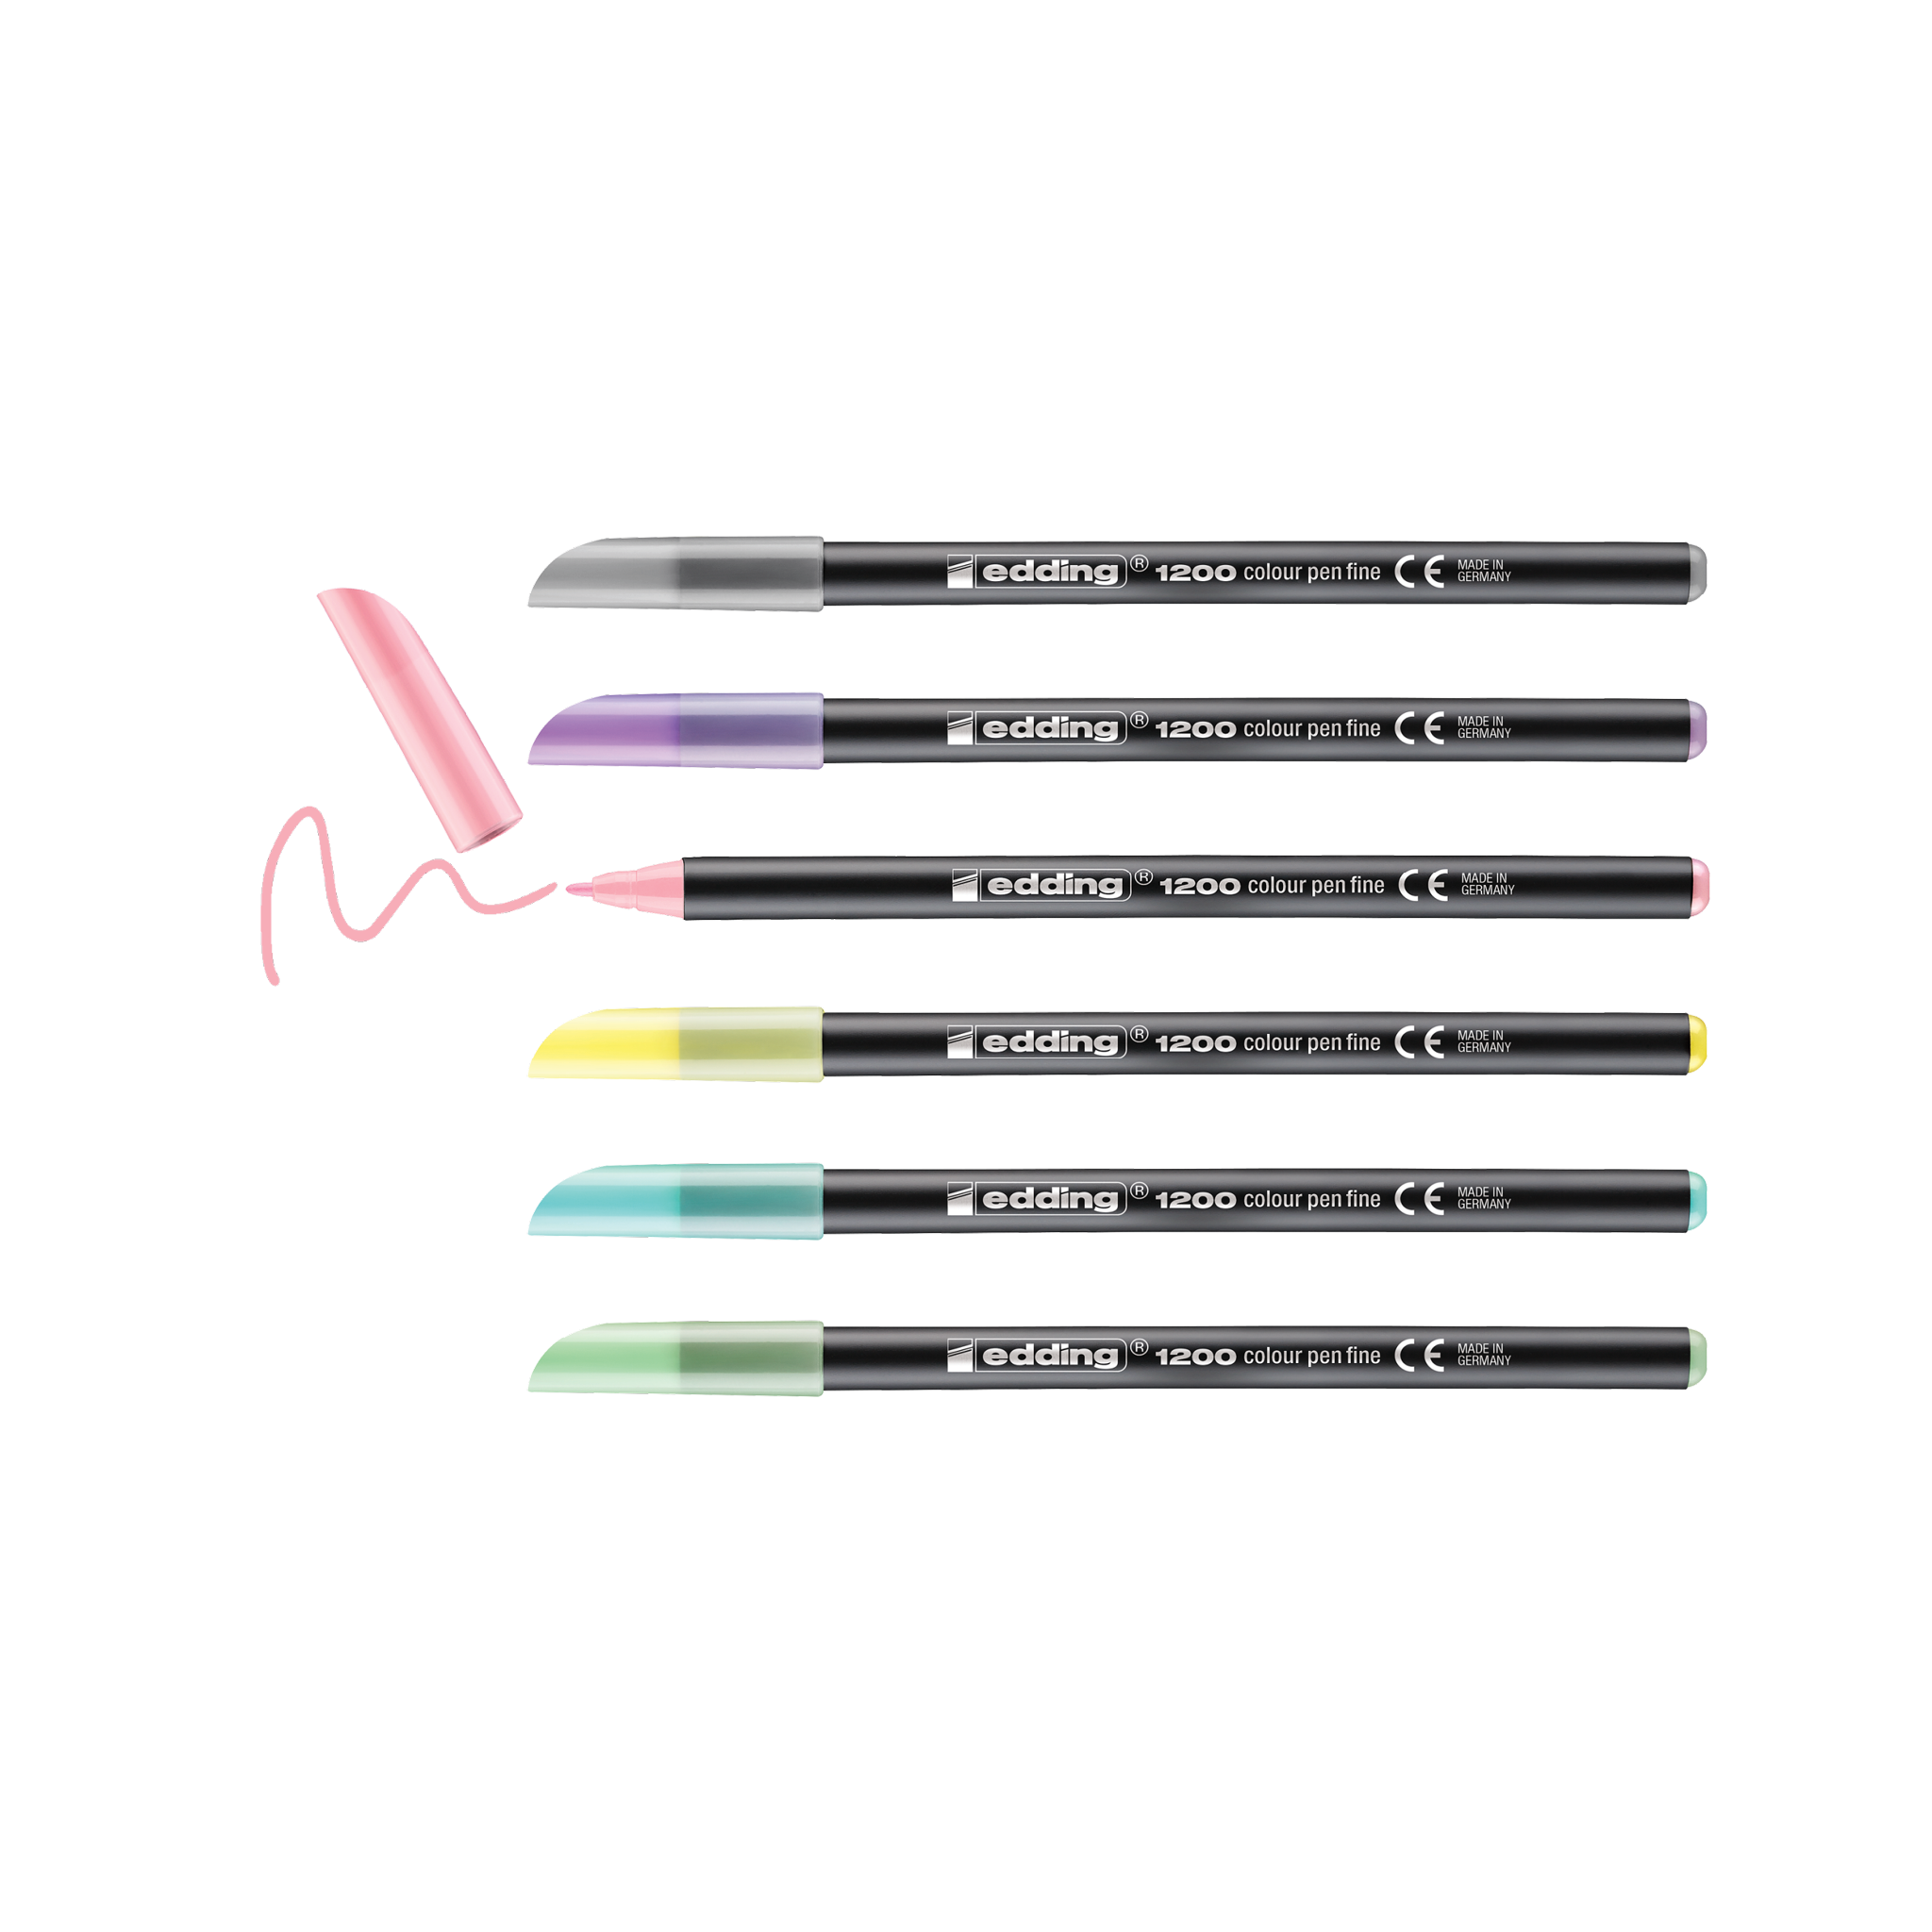 Eine Packung mit sechs pastellfarbenen edding 1200 Fasermaler fein Stiften mit den Schriftzeichen Bibi und Tina auf der Verpackung, inklusive Bonusaufkleber.